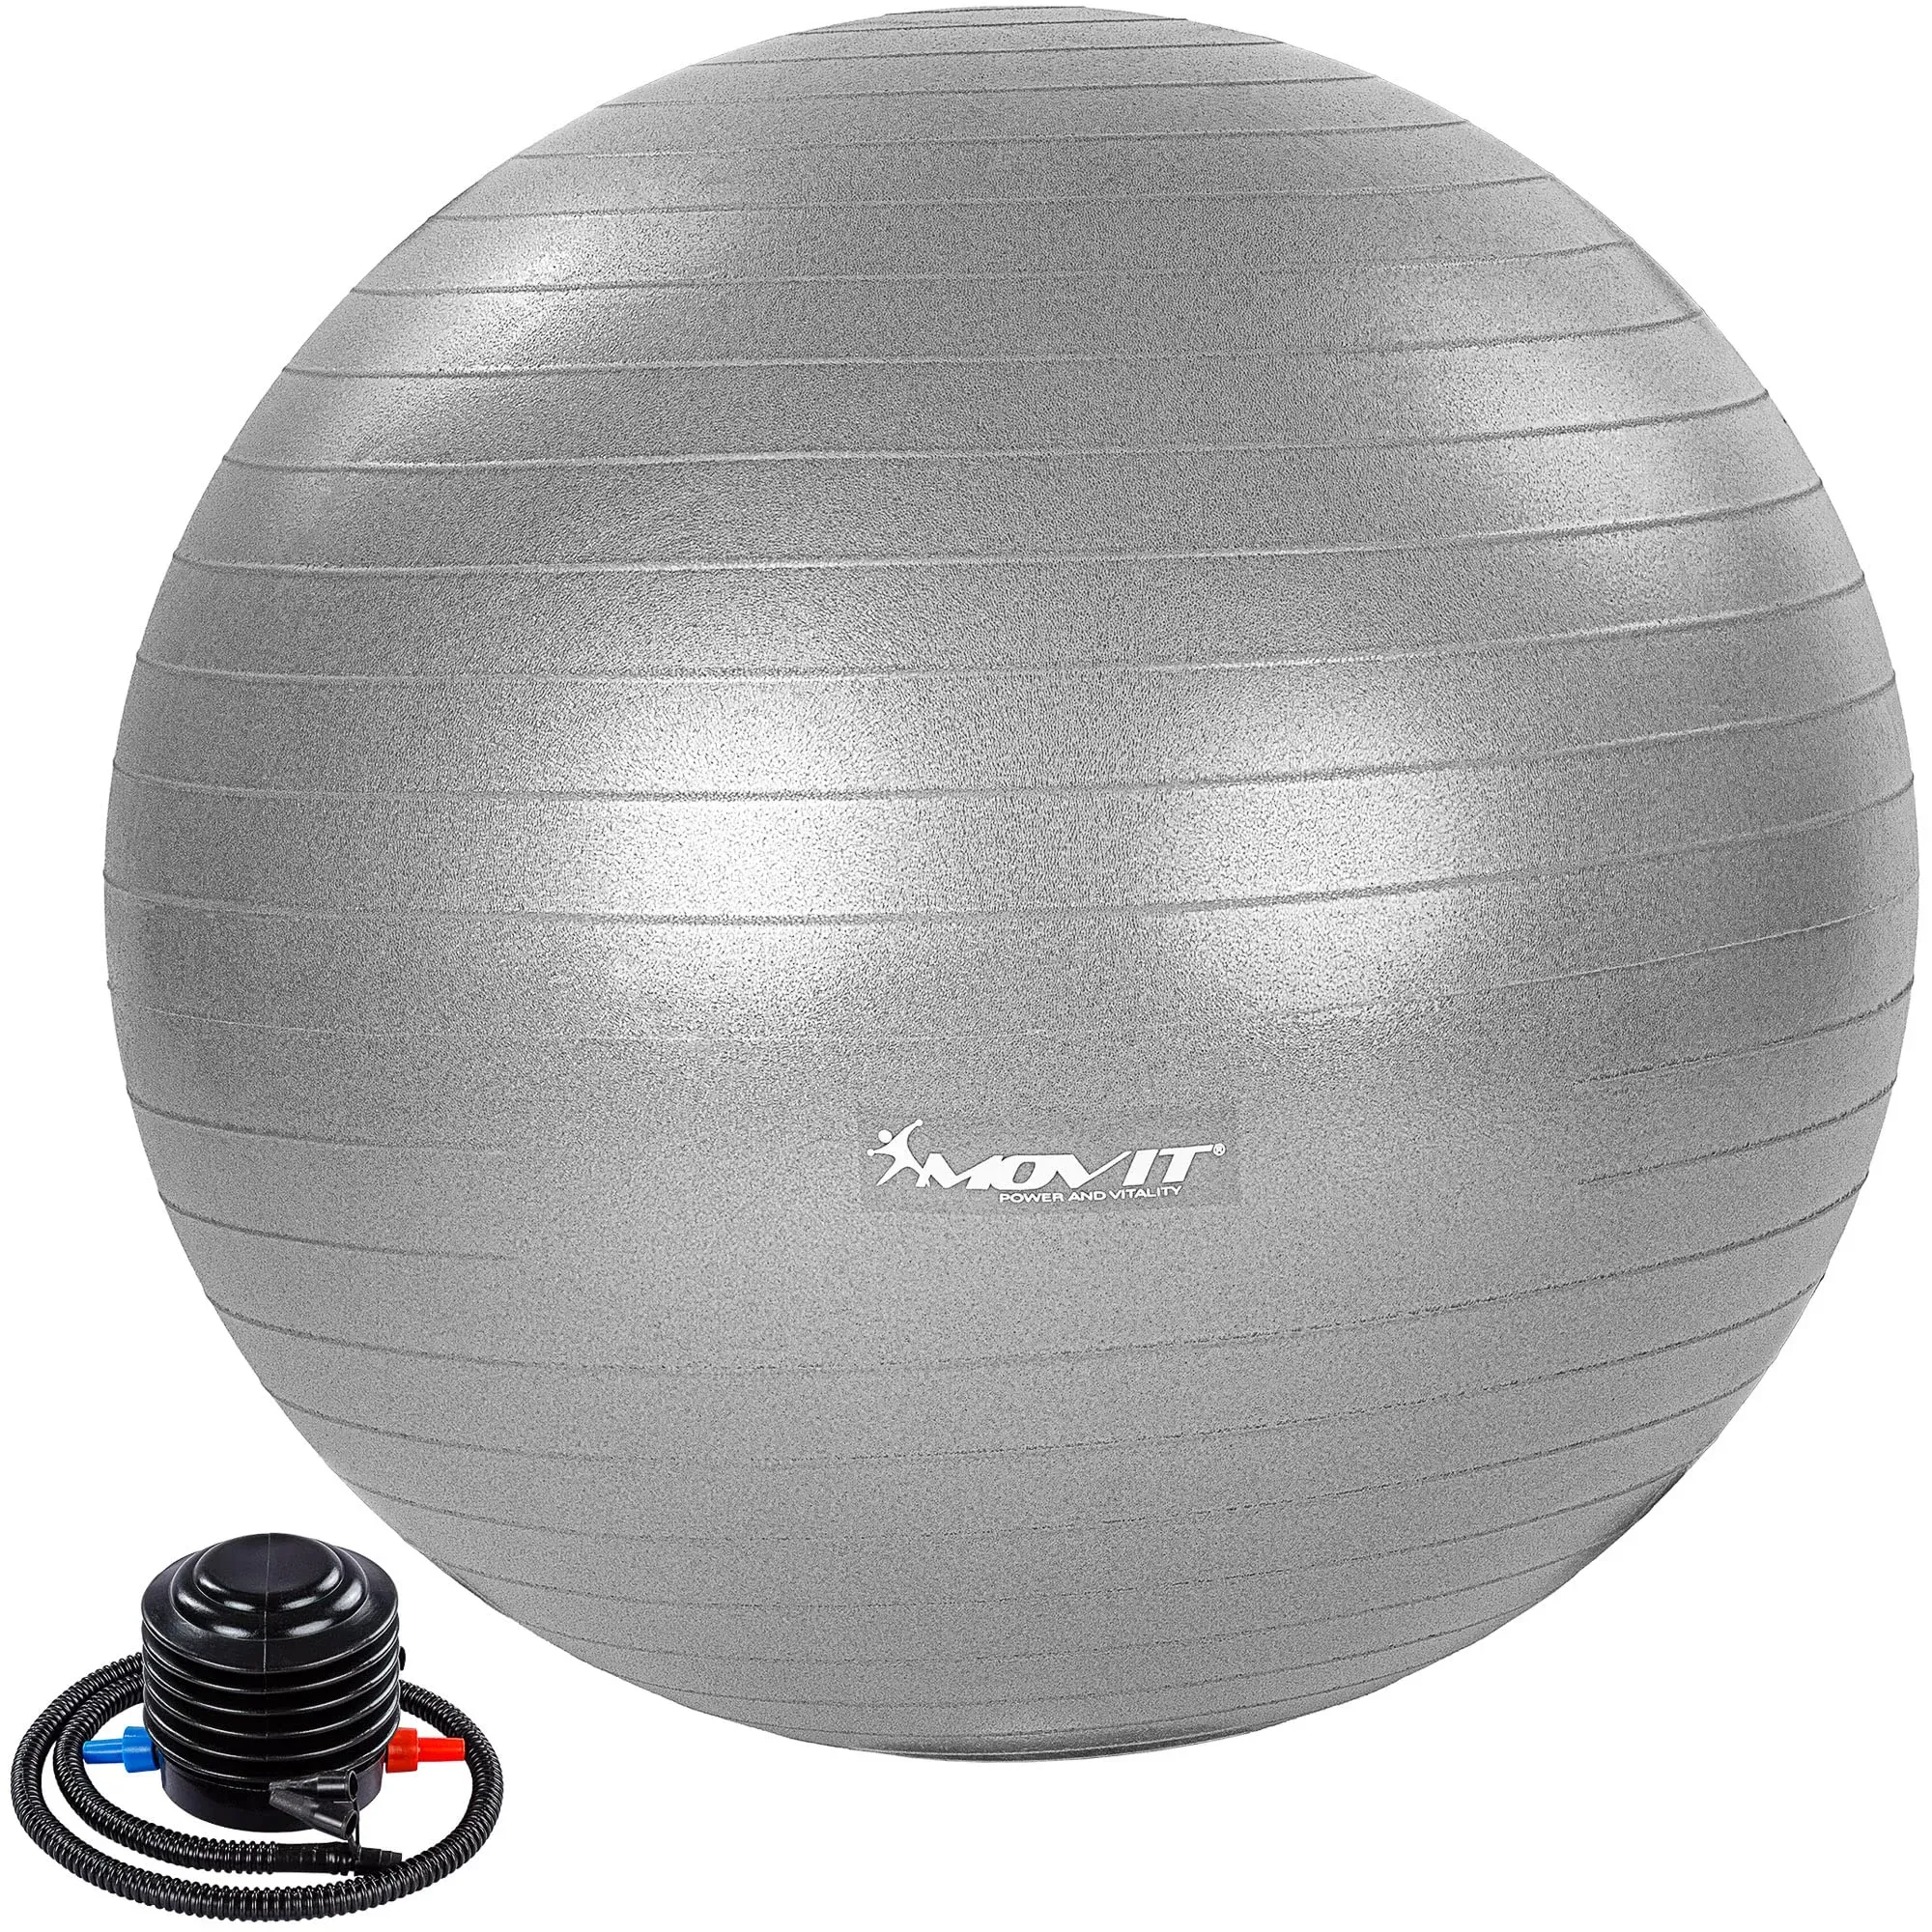 MOVIT® Gymnastikball »Dynamic Ball« inkl. Pumpe, 55 cm, Silber, Maximalbelastbarkeit bis 500kg, berstsicher, Fitness-Ball, Sitzball, Yogaball, Pilates-Ball, Balance